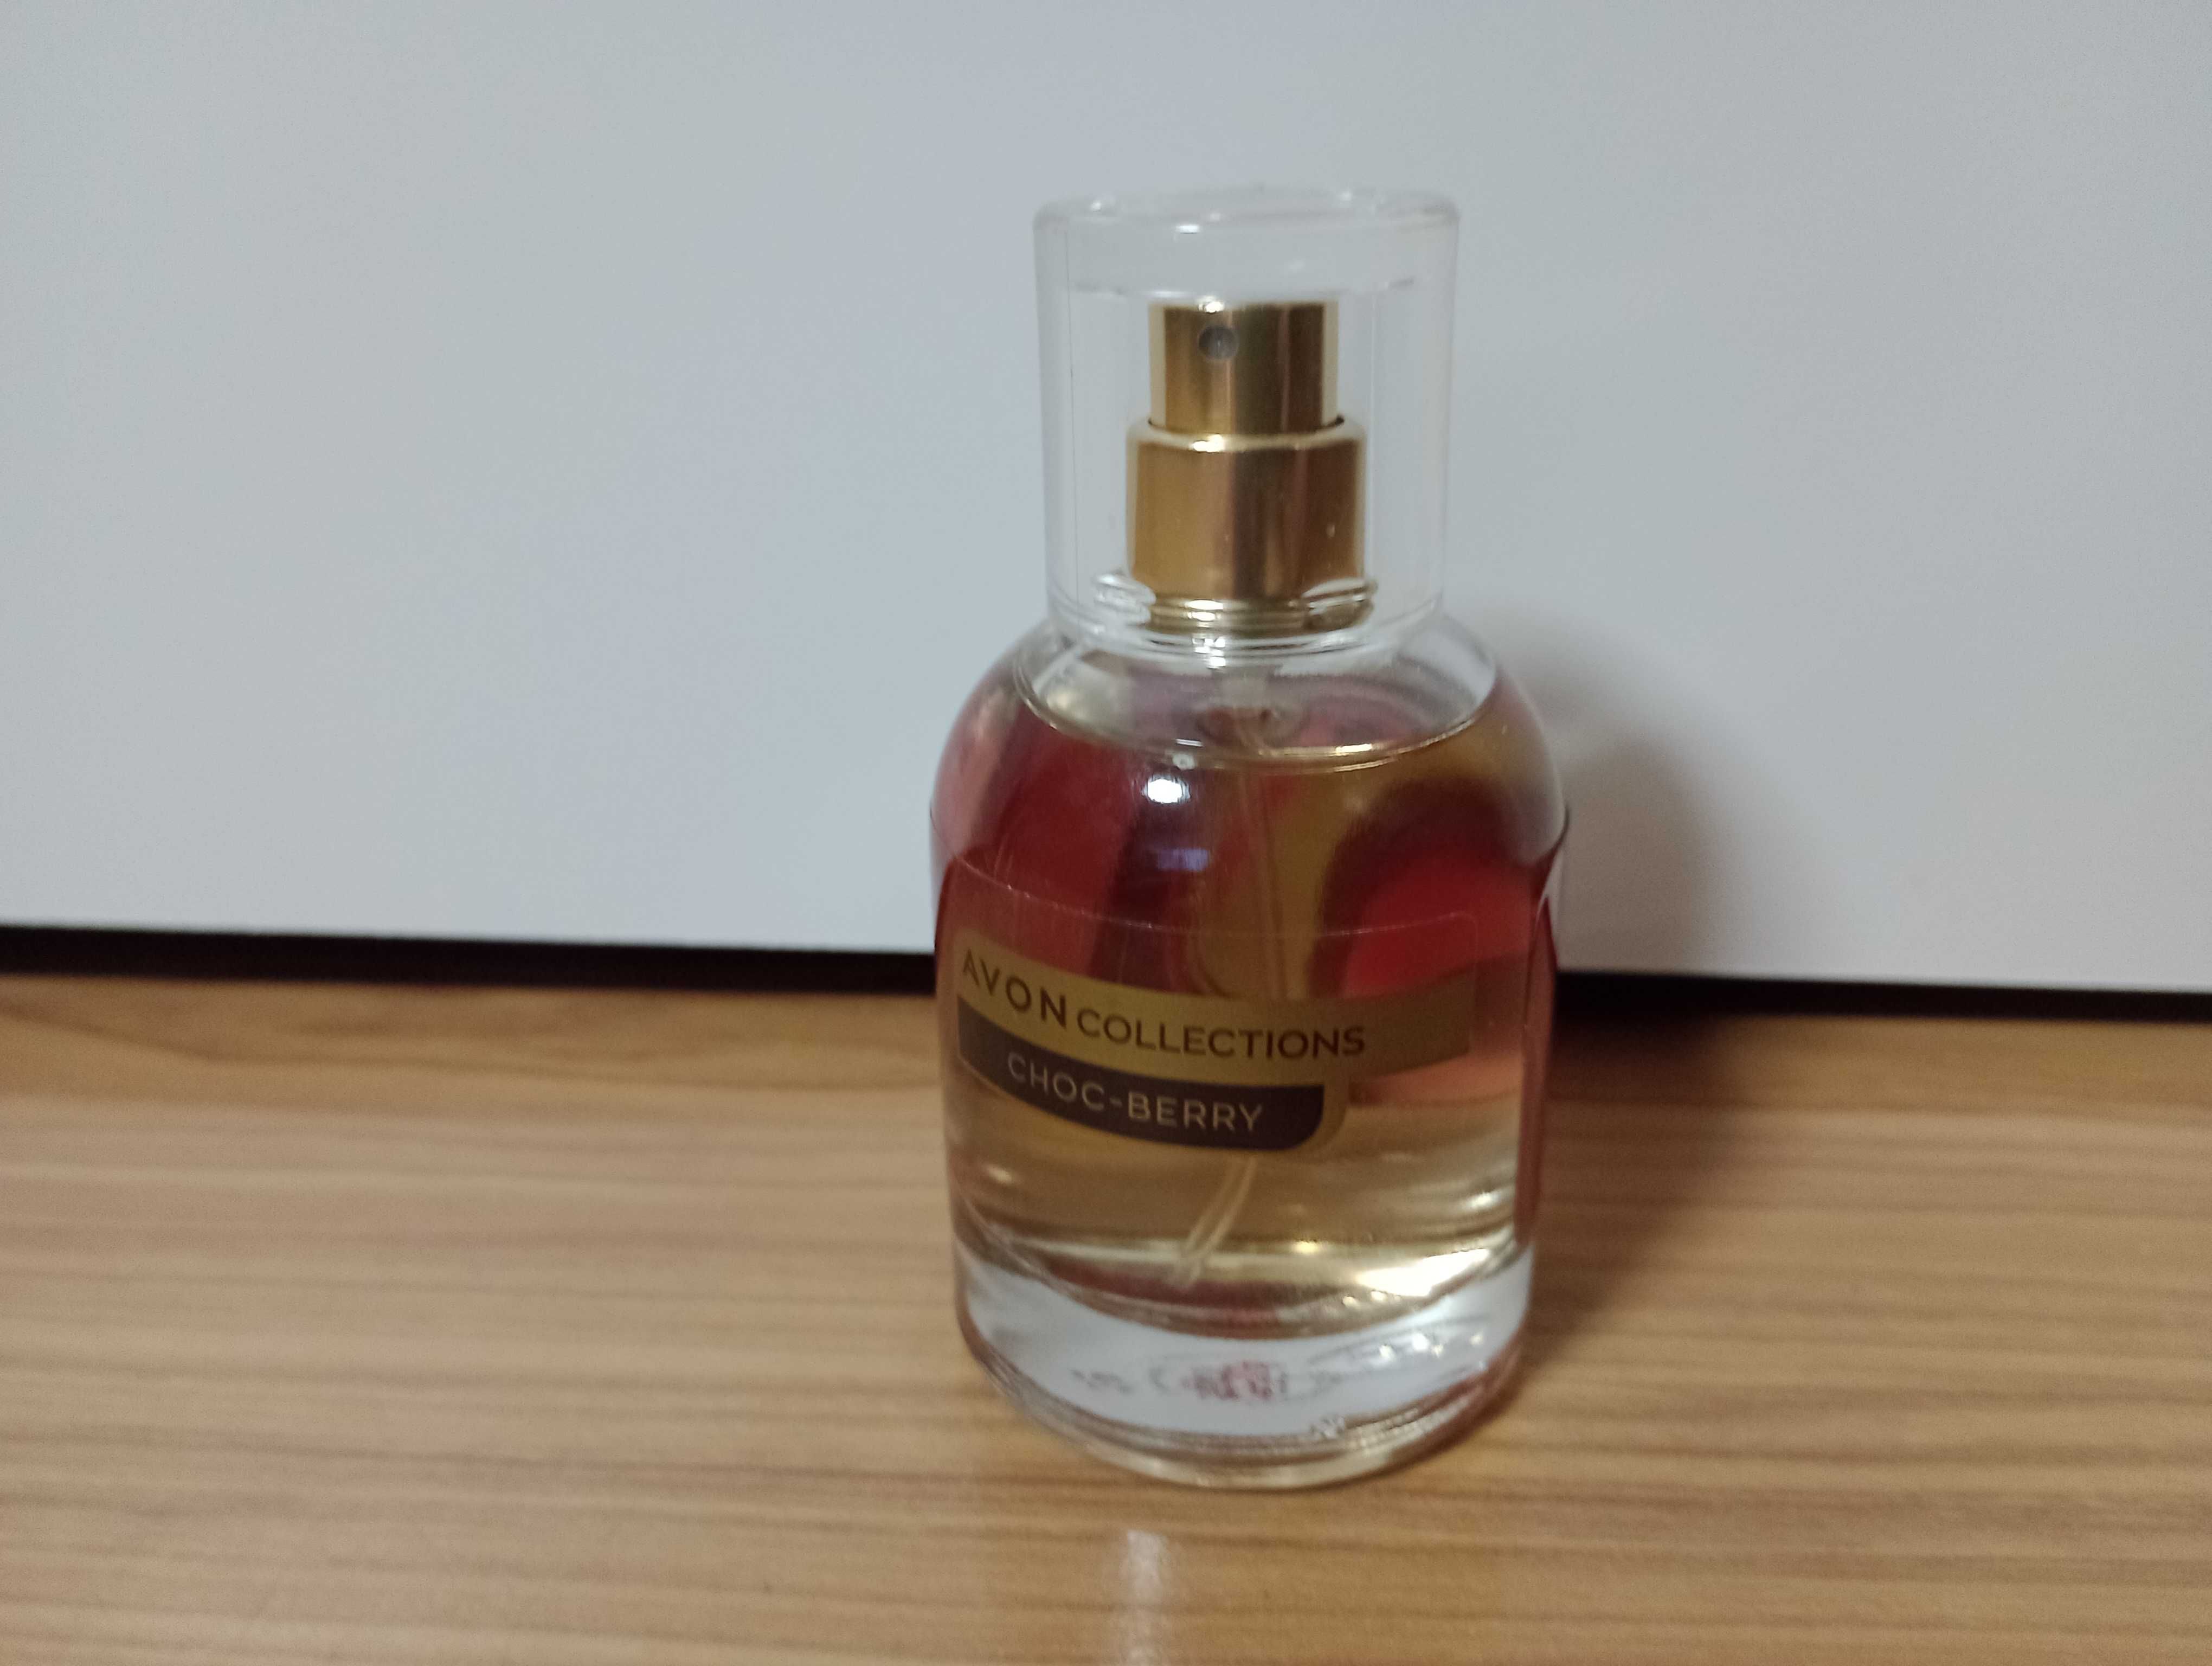 Perfum avon Choc-berry nowa